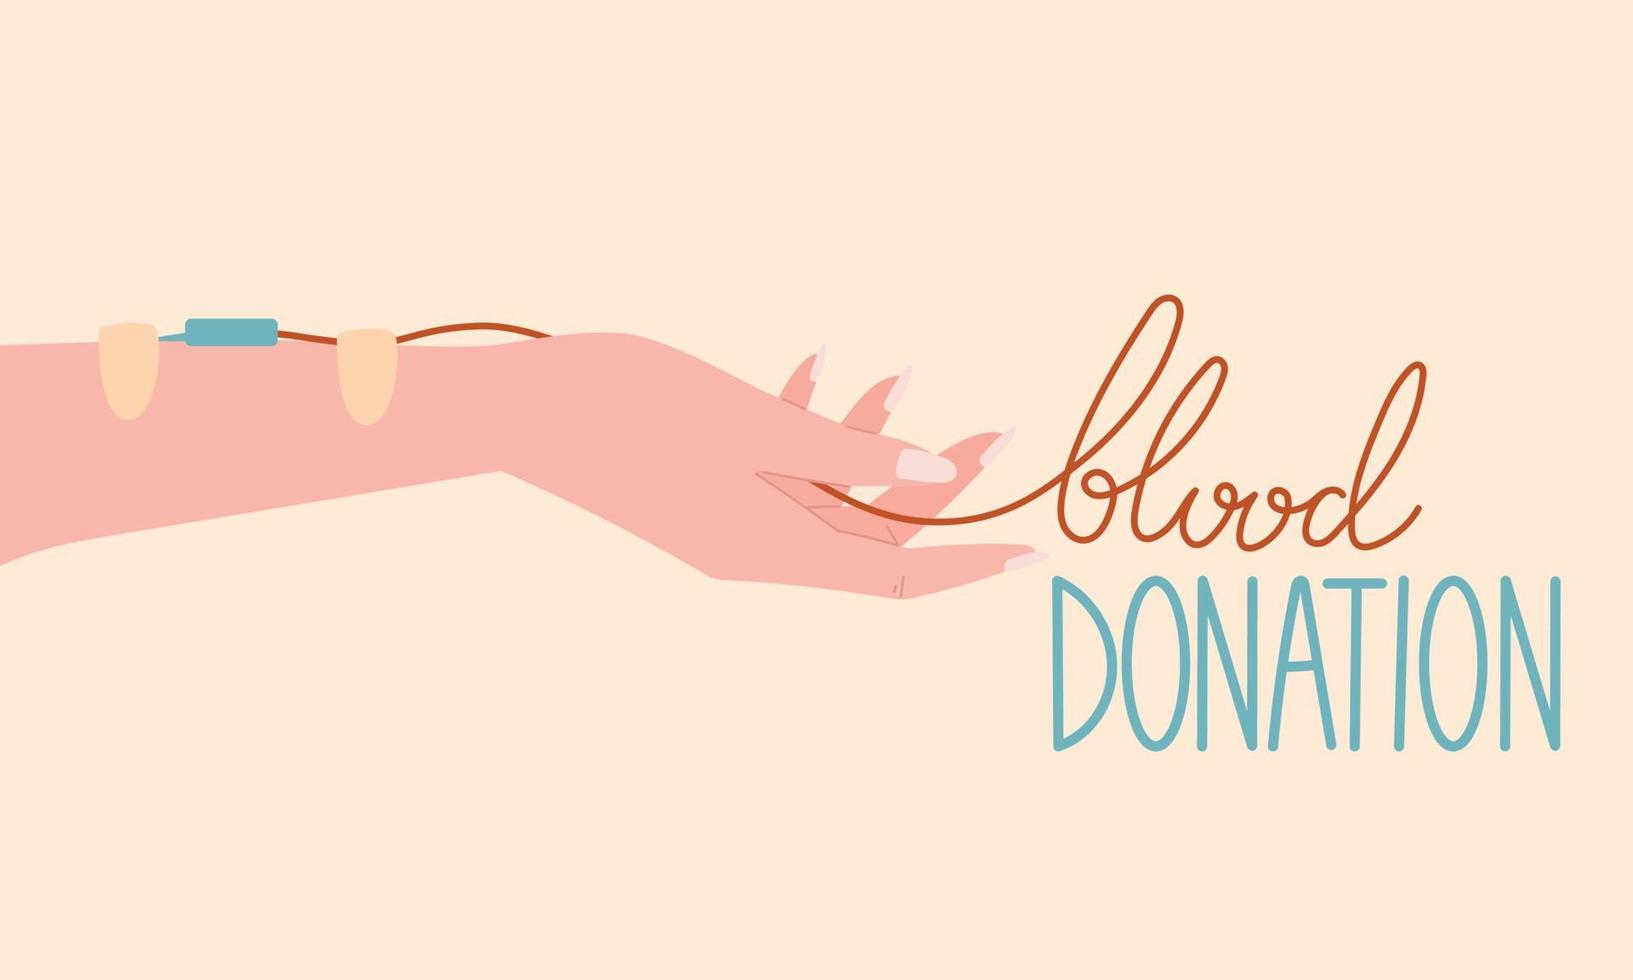 blod donation begrepp platt baner med text. tecknad serie kvinna hand med kateter, medicinsk plåster och rör. vektor